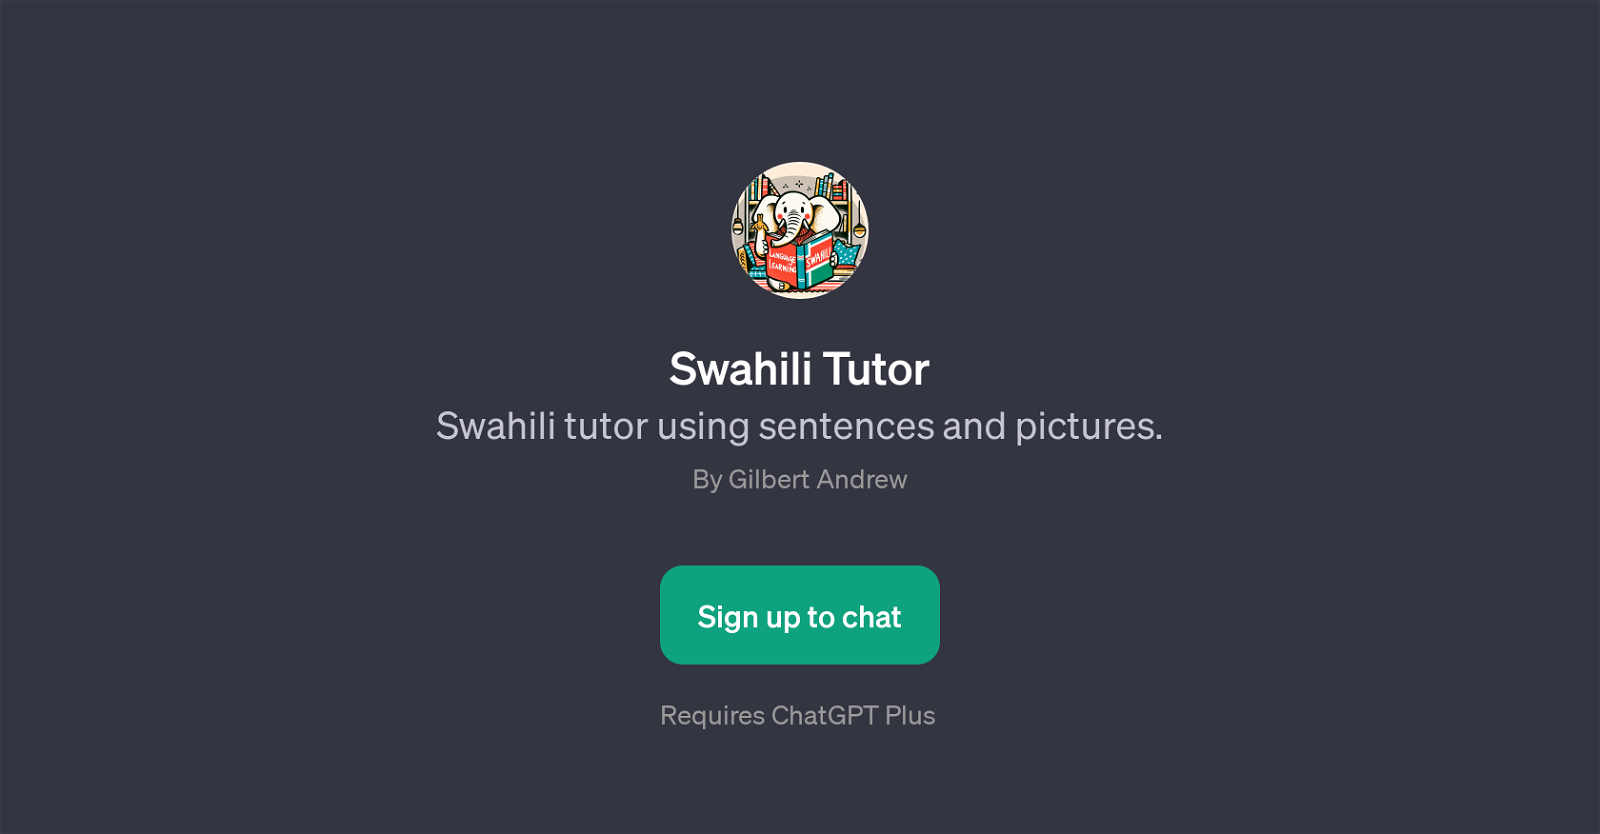 Swahili Tutor website